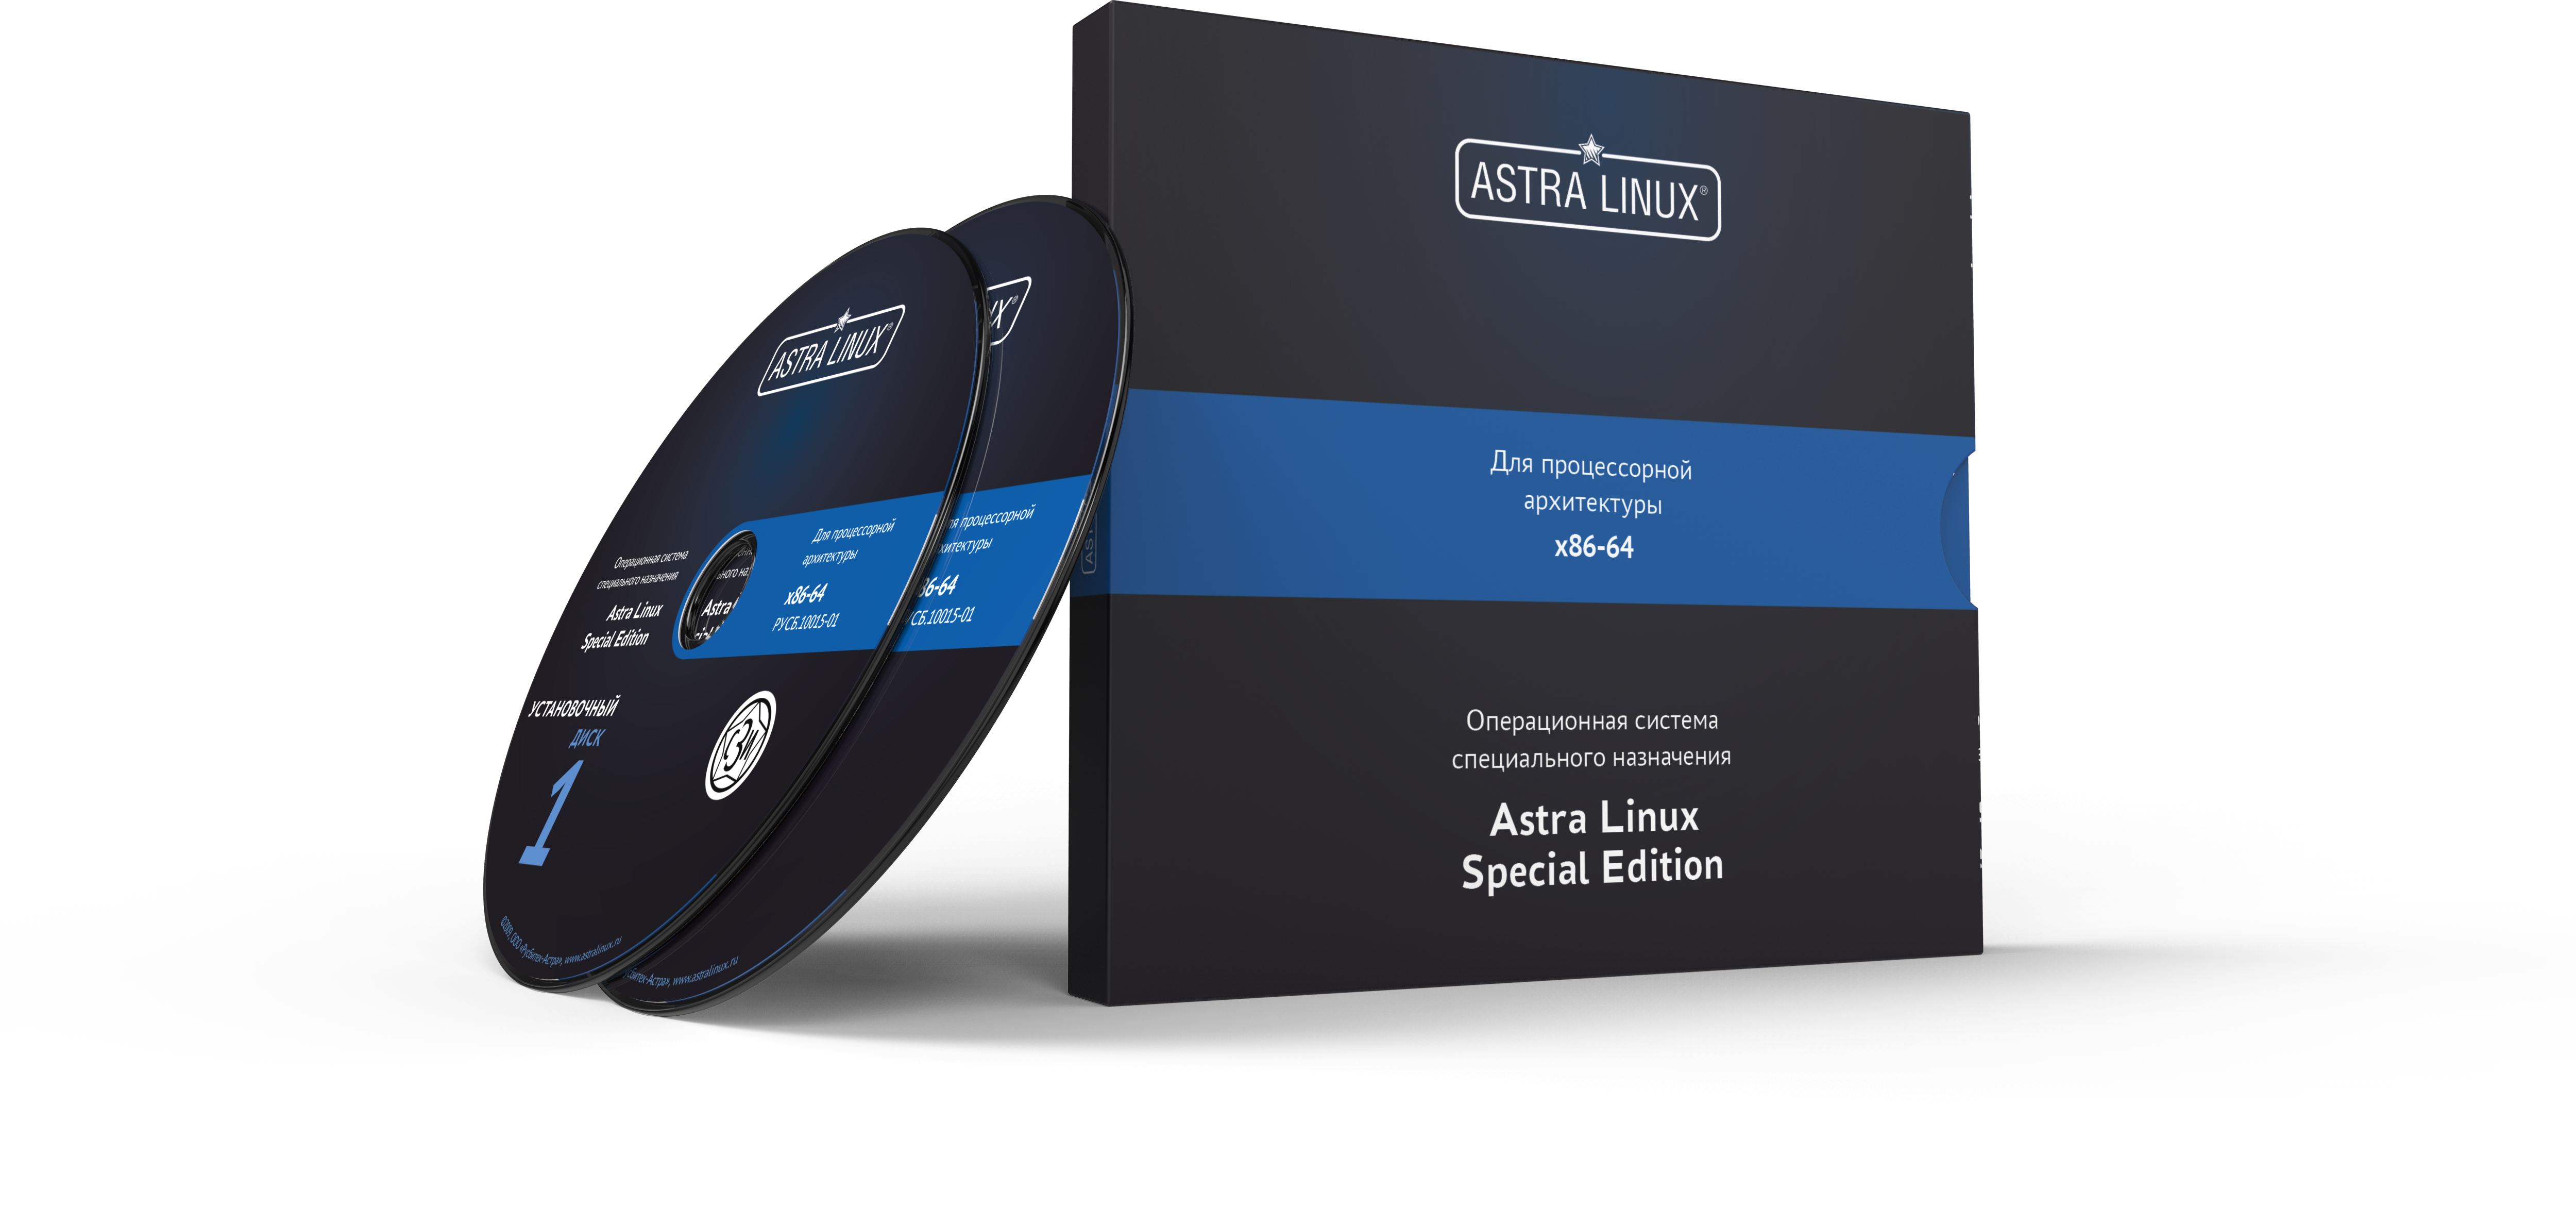 Astra Linux Special Edition 1.7 - Орел, электронный, без огр. срока, ТП "Стандарт" на 12 мес. Неограниченное количество виртуальных машин.